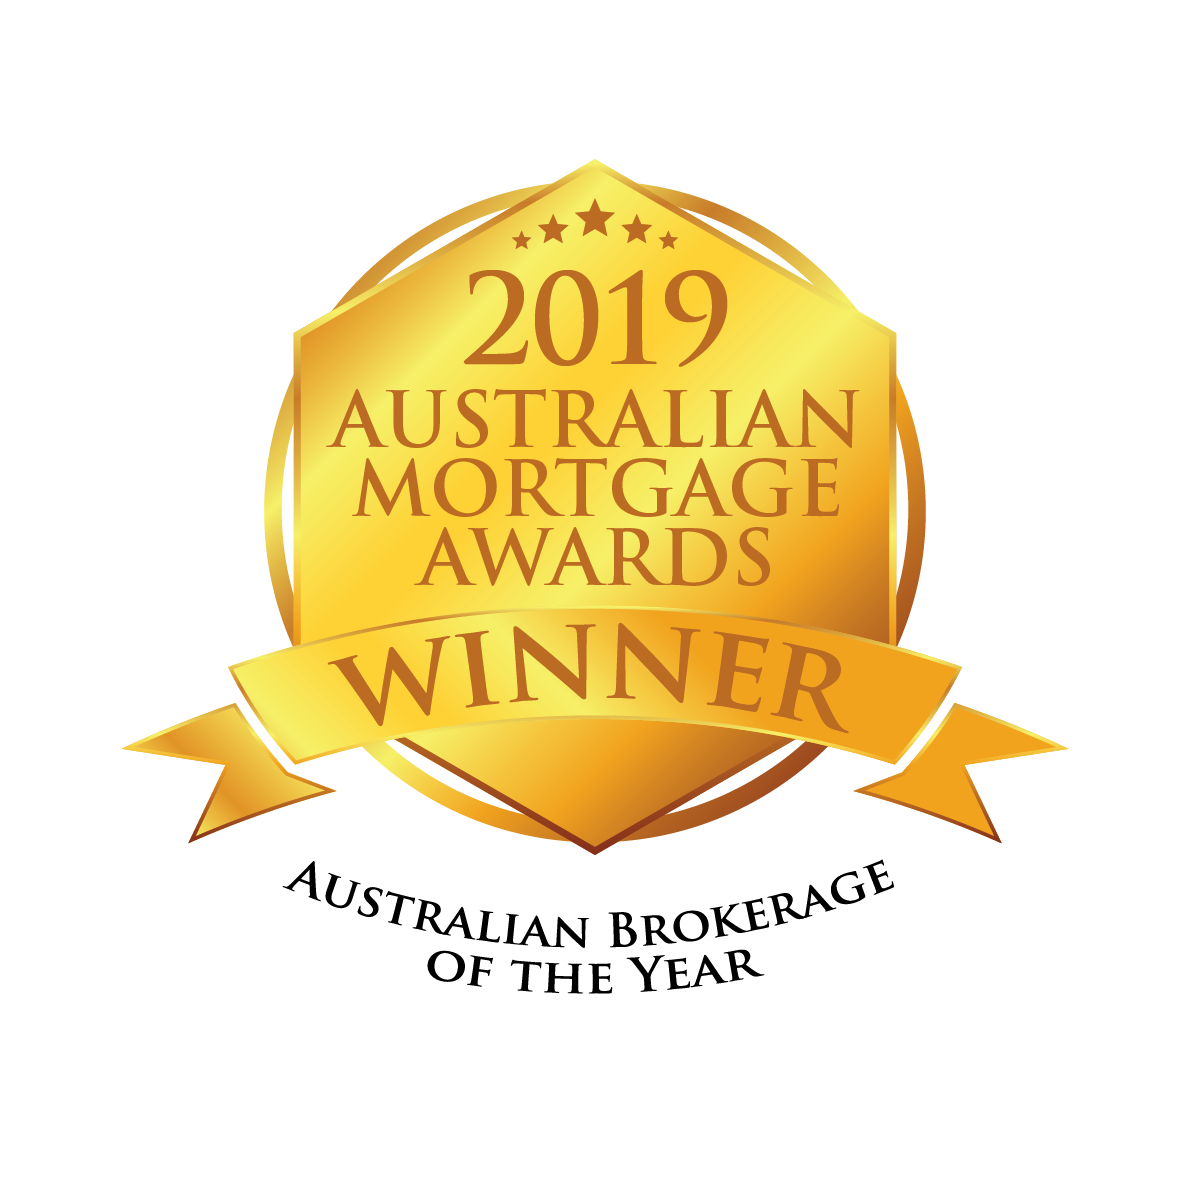 Australian Mortgage Awards 2019 Winner Seal